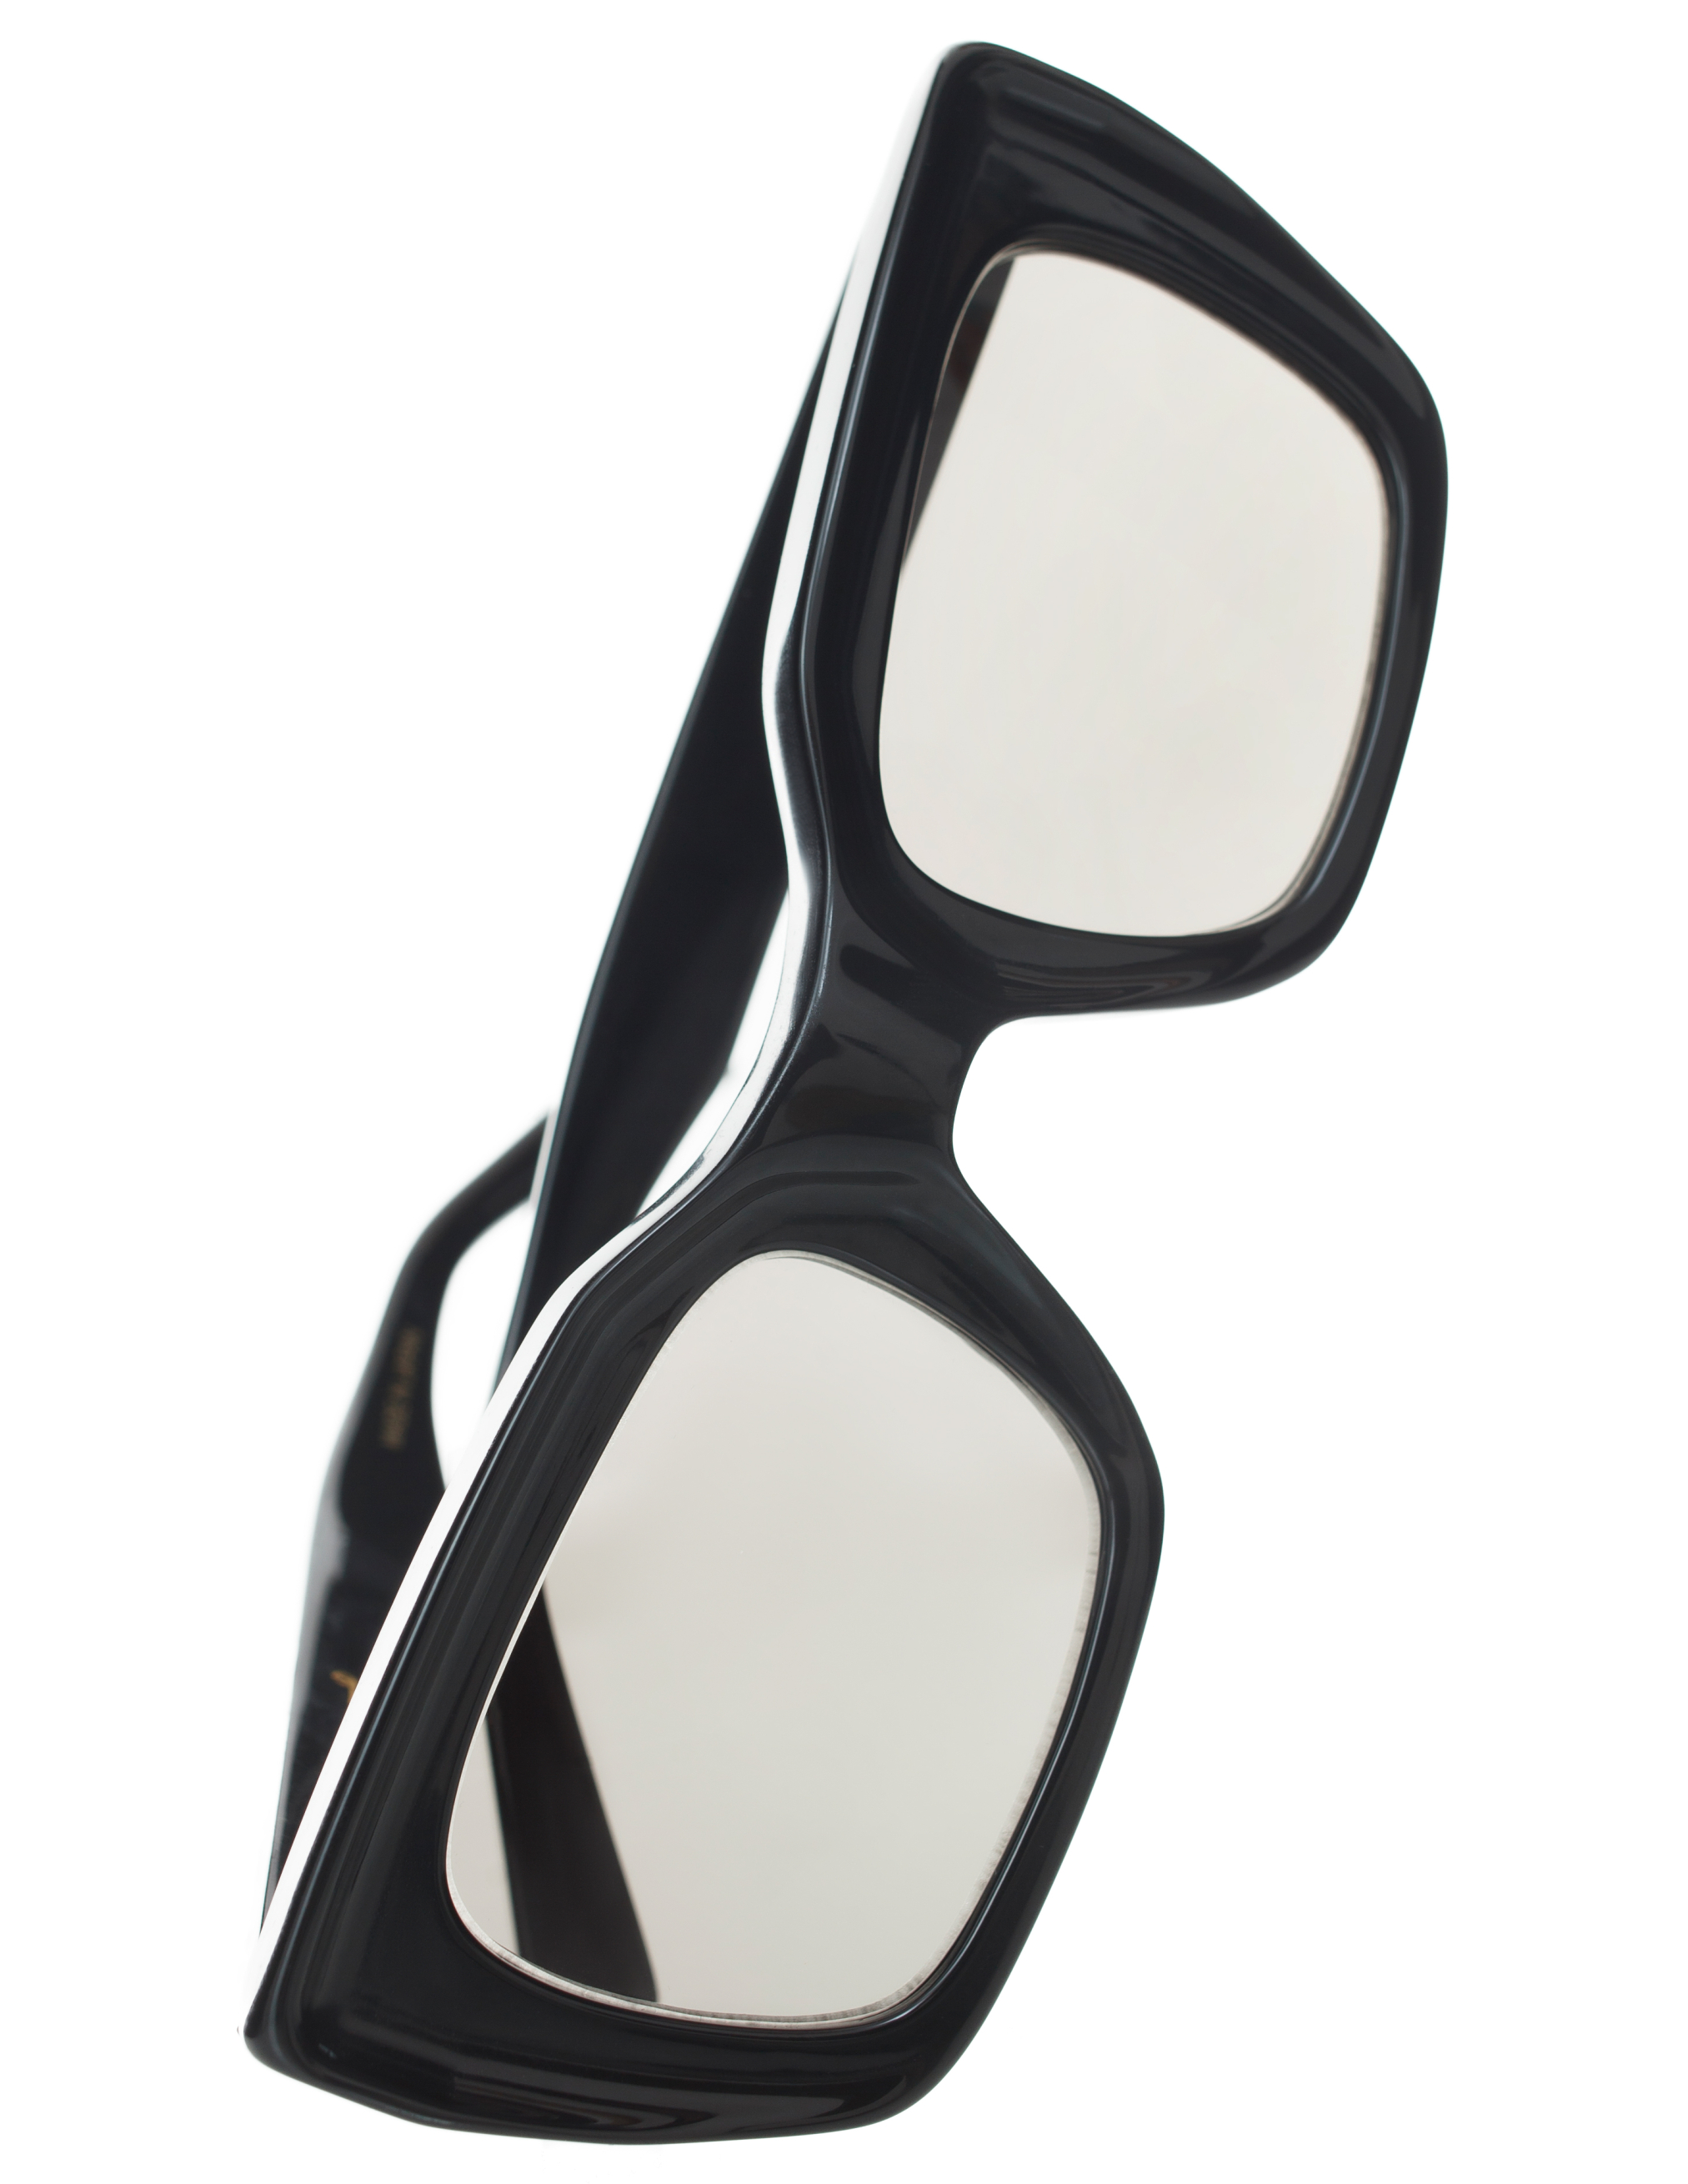 Солнцезащитные очки с прямоугольной оправой Undercover UC1C4E01/BLACK, размер One Size